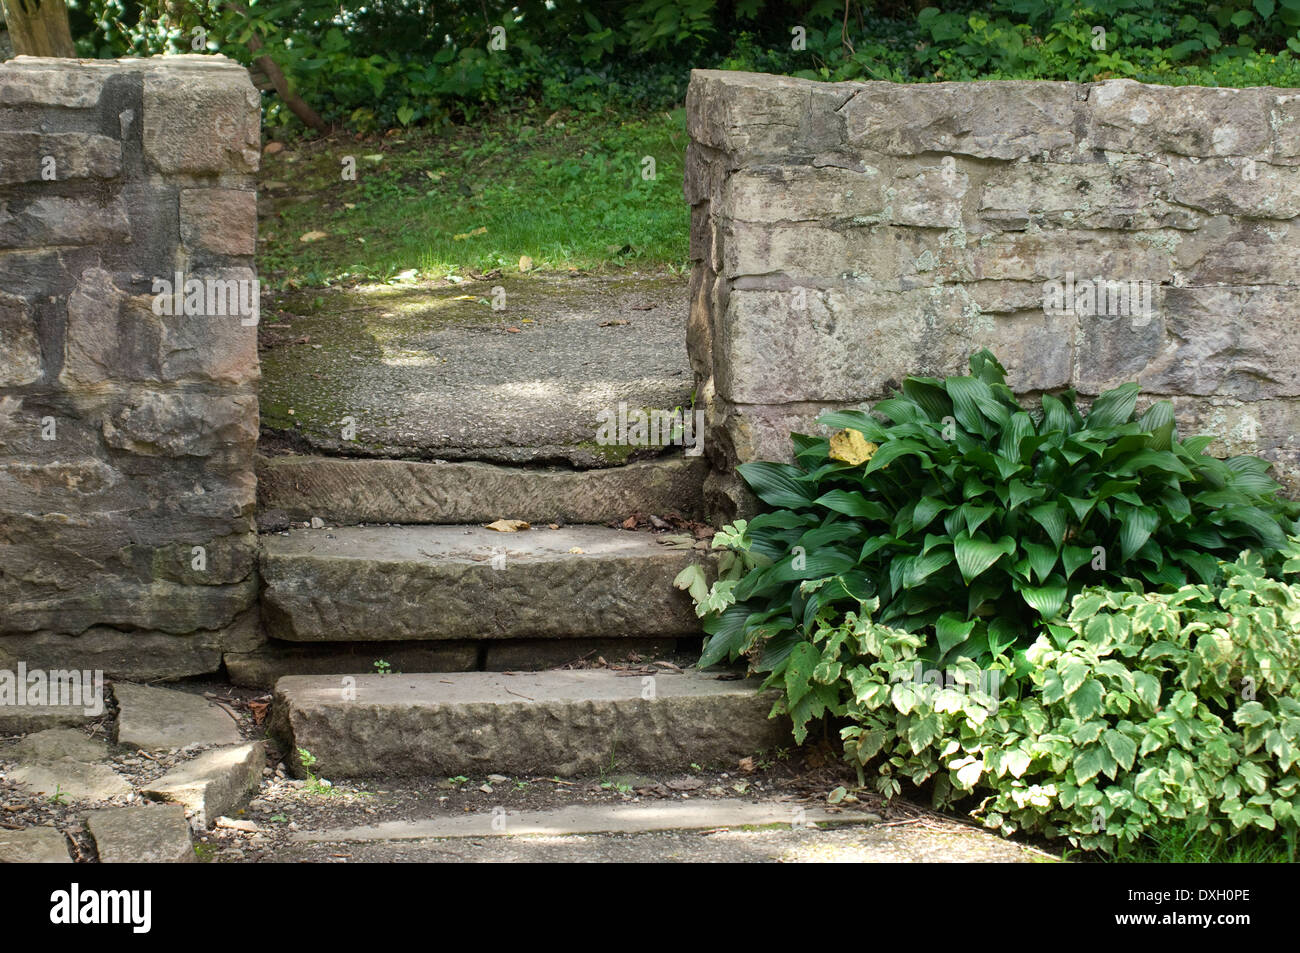 Mur de pierre et les étapes, Spring Mill Pioneer Village, Indiana. Photographie numérique Banque D'Images